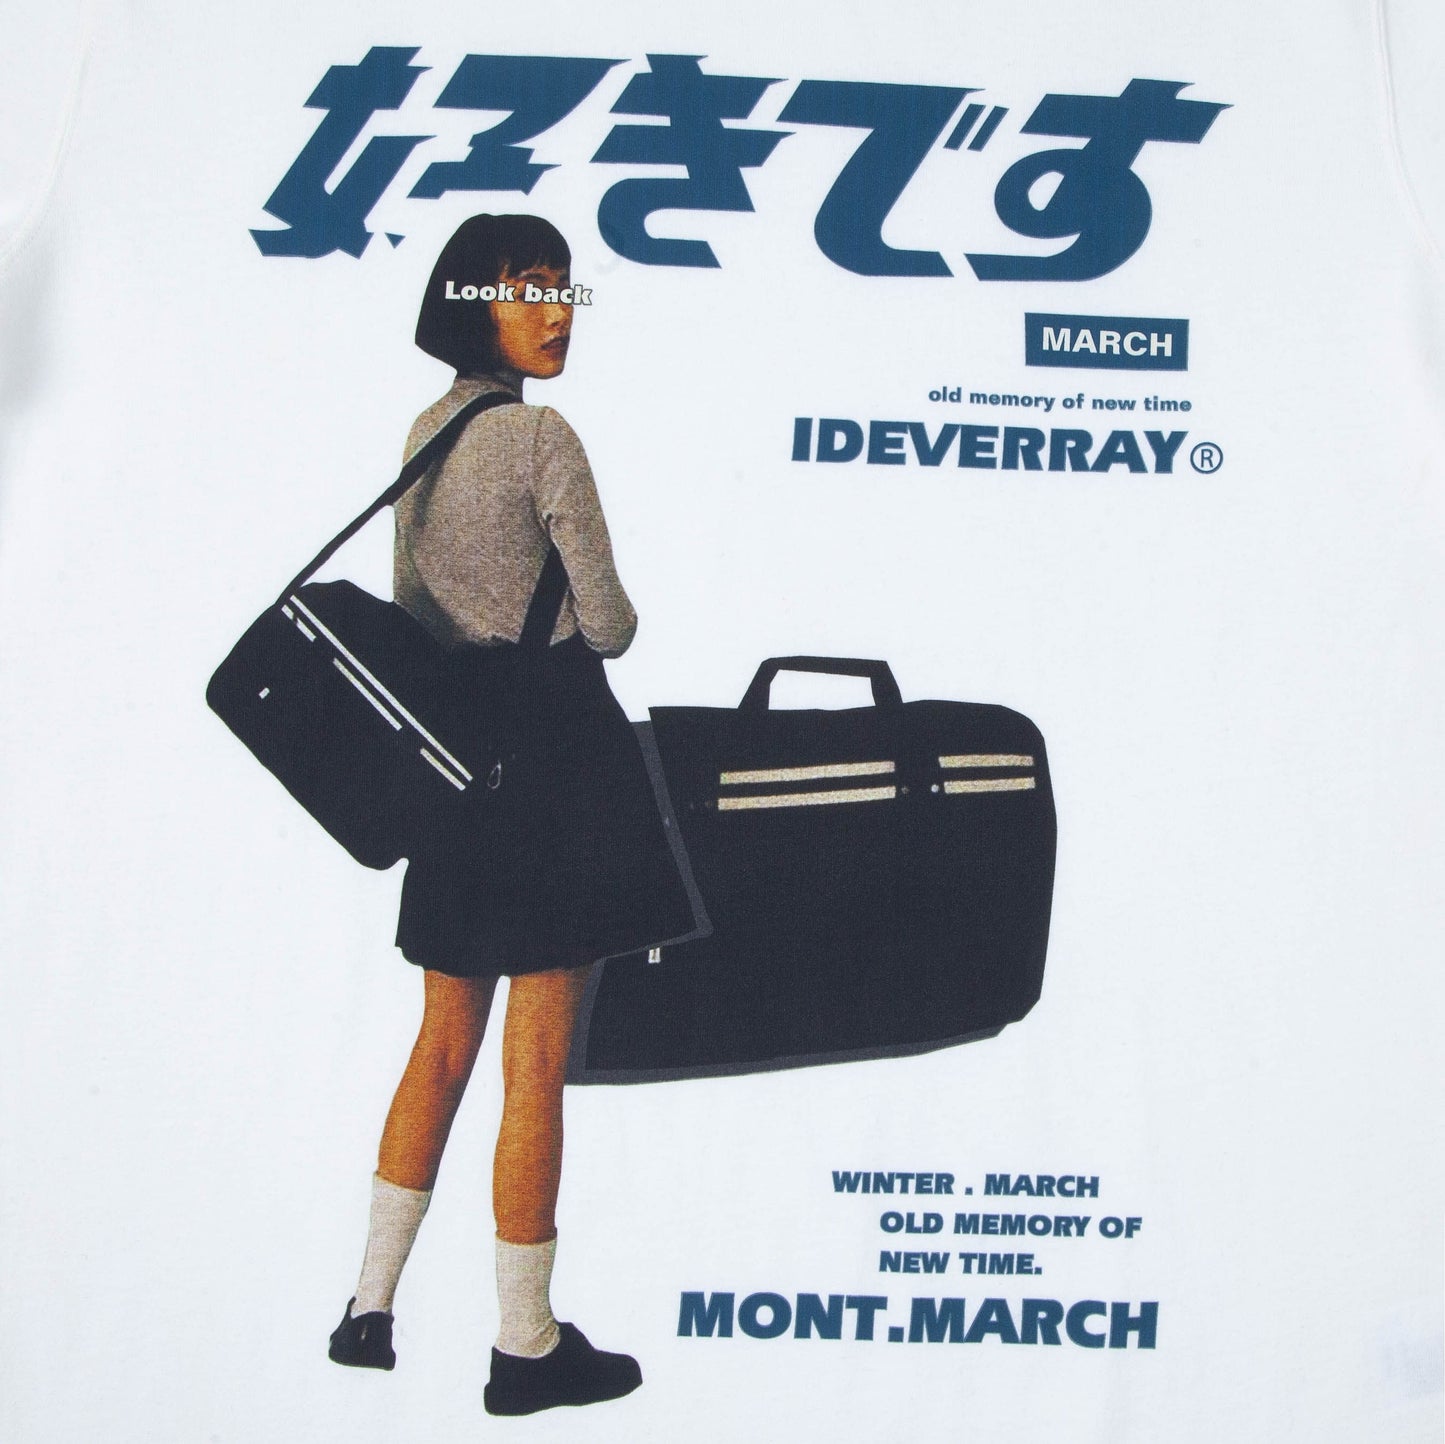 Hip Hop Streetwear Harajuku T Shirt Girl Japanese Kanji Print Tshirt